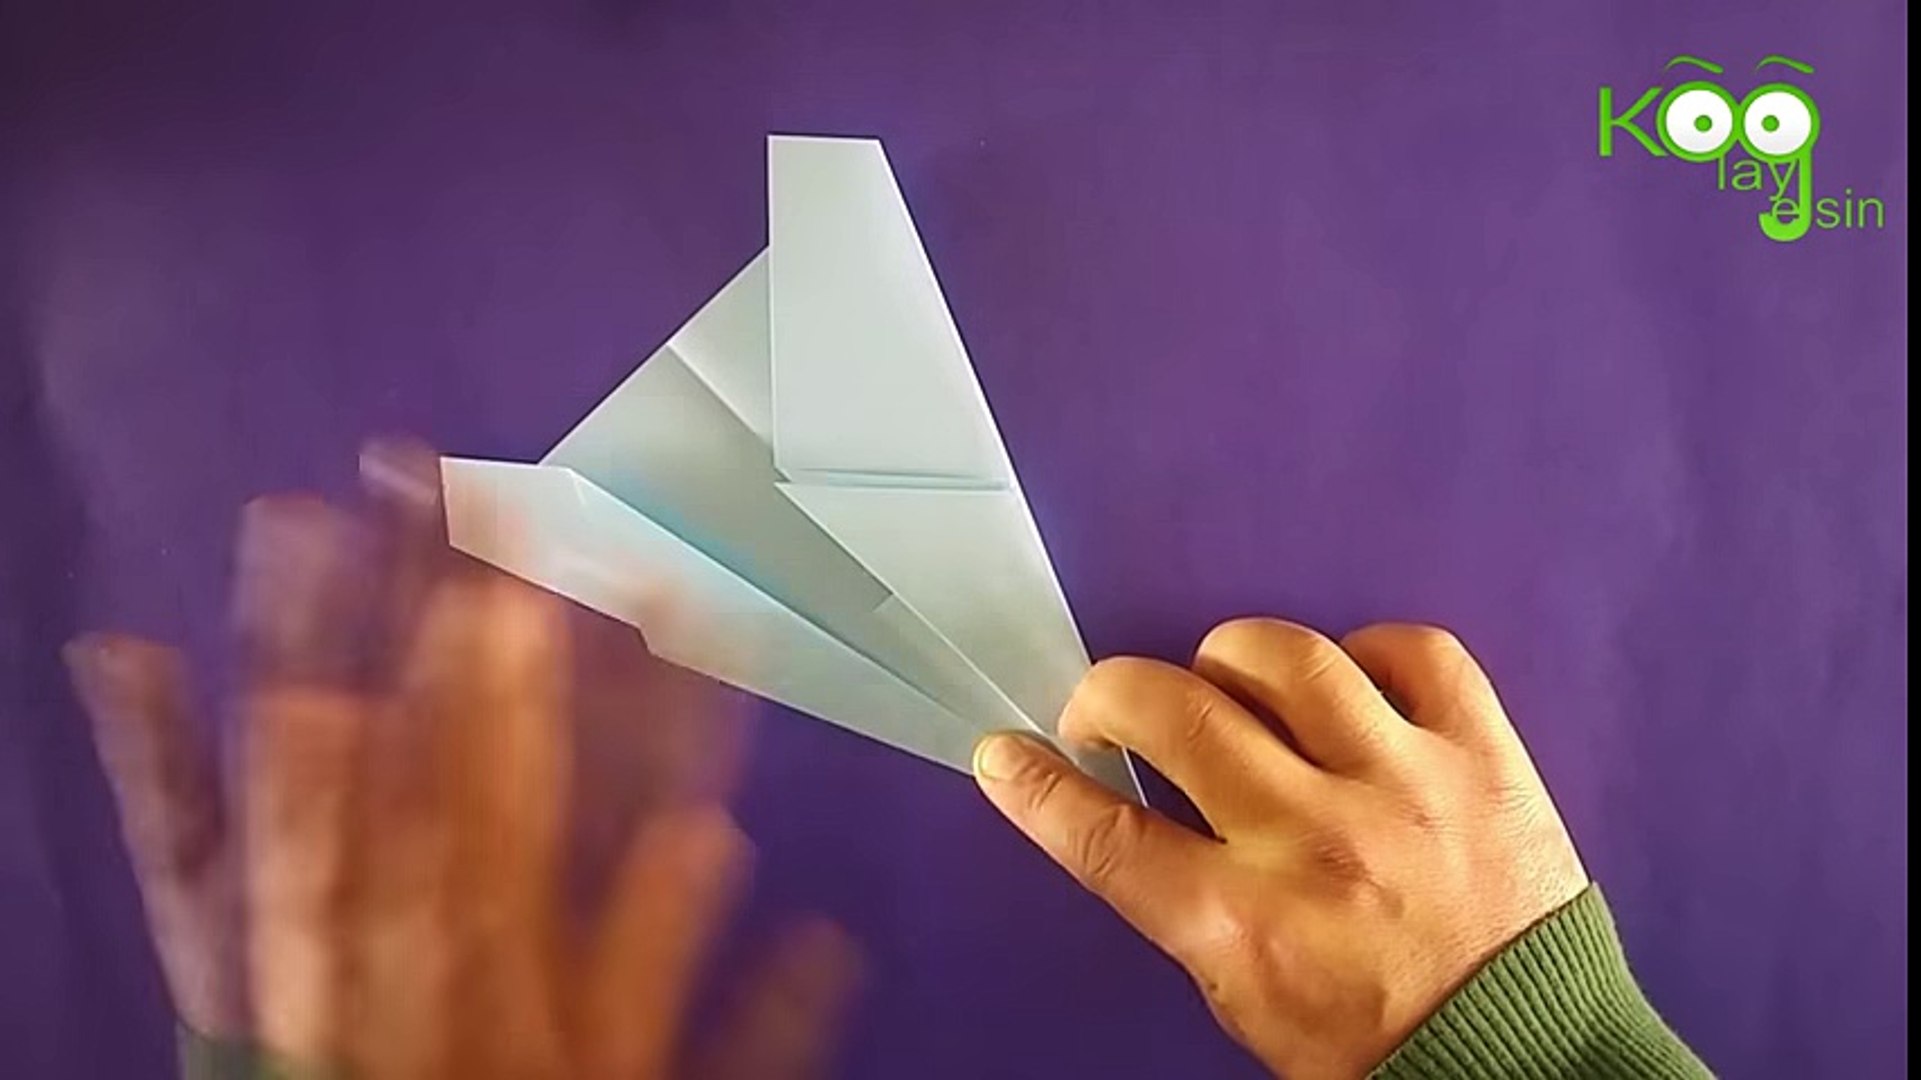 Kağıttan uçak yapımı F16 Türk Savaş Jeti 101 Metre uçabiliyor - YouTube -  Dailymotion Video